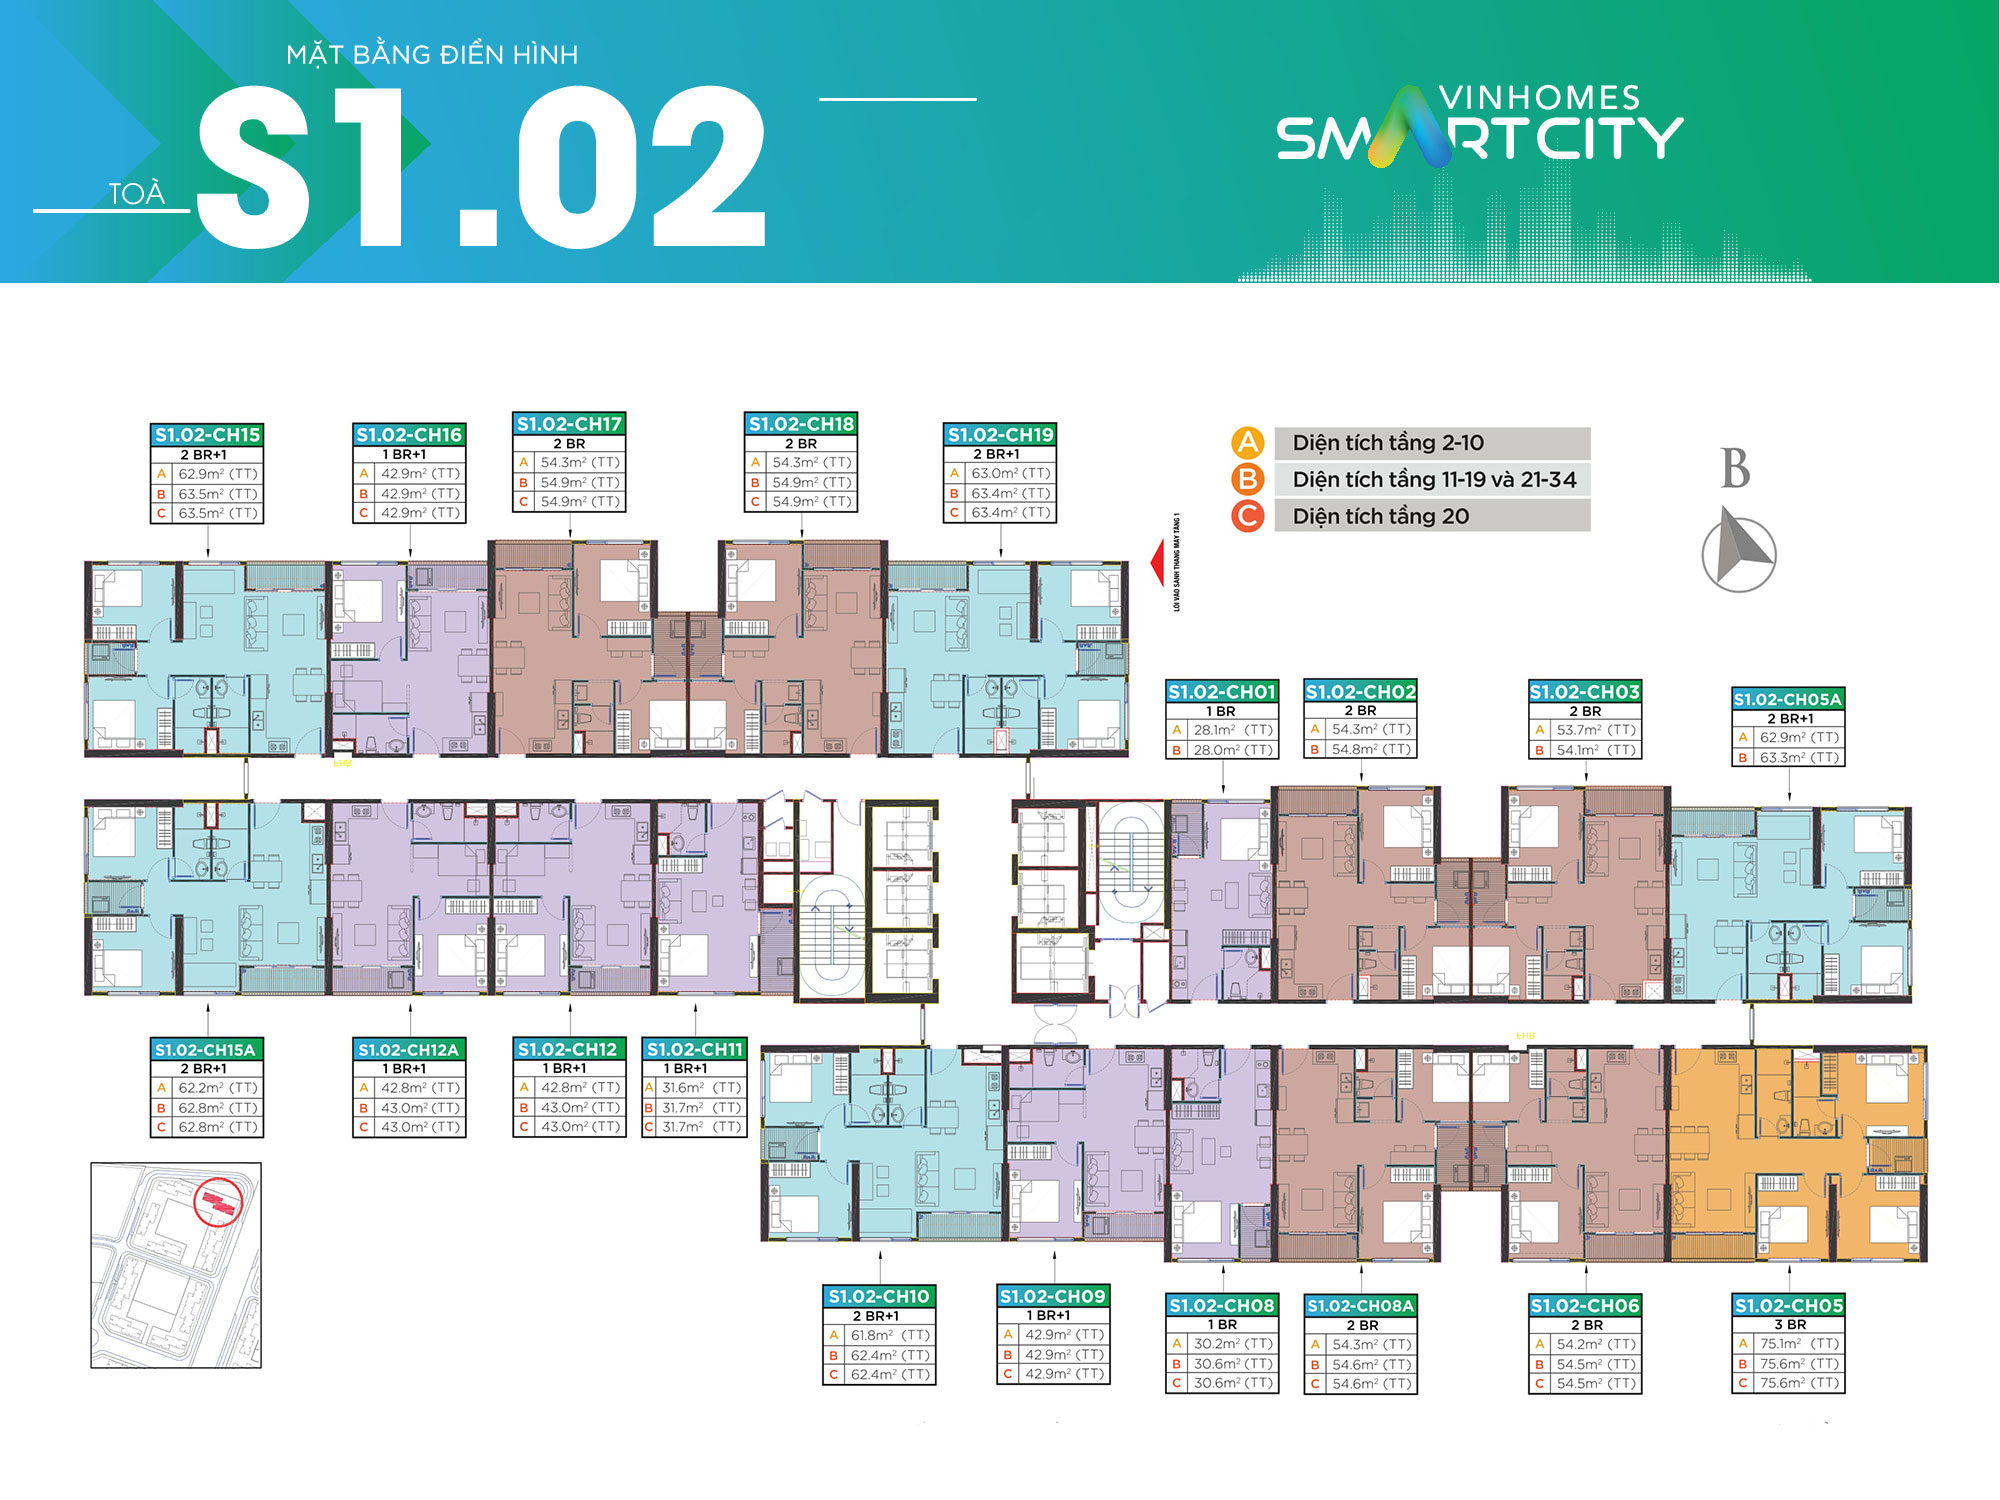 toa-s102-vinhomes-smart-city-co-bao-nhieu-can-goc-onehousing-7